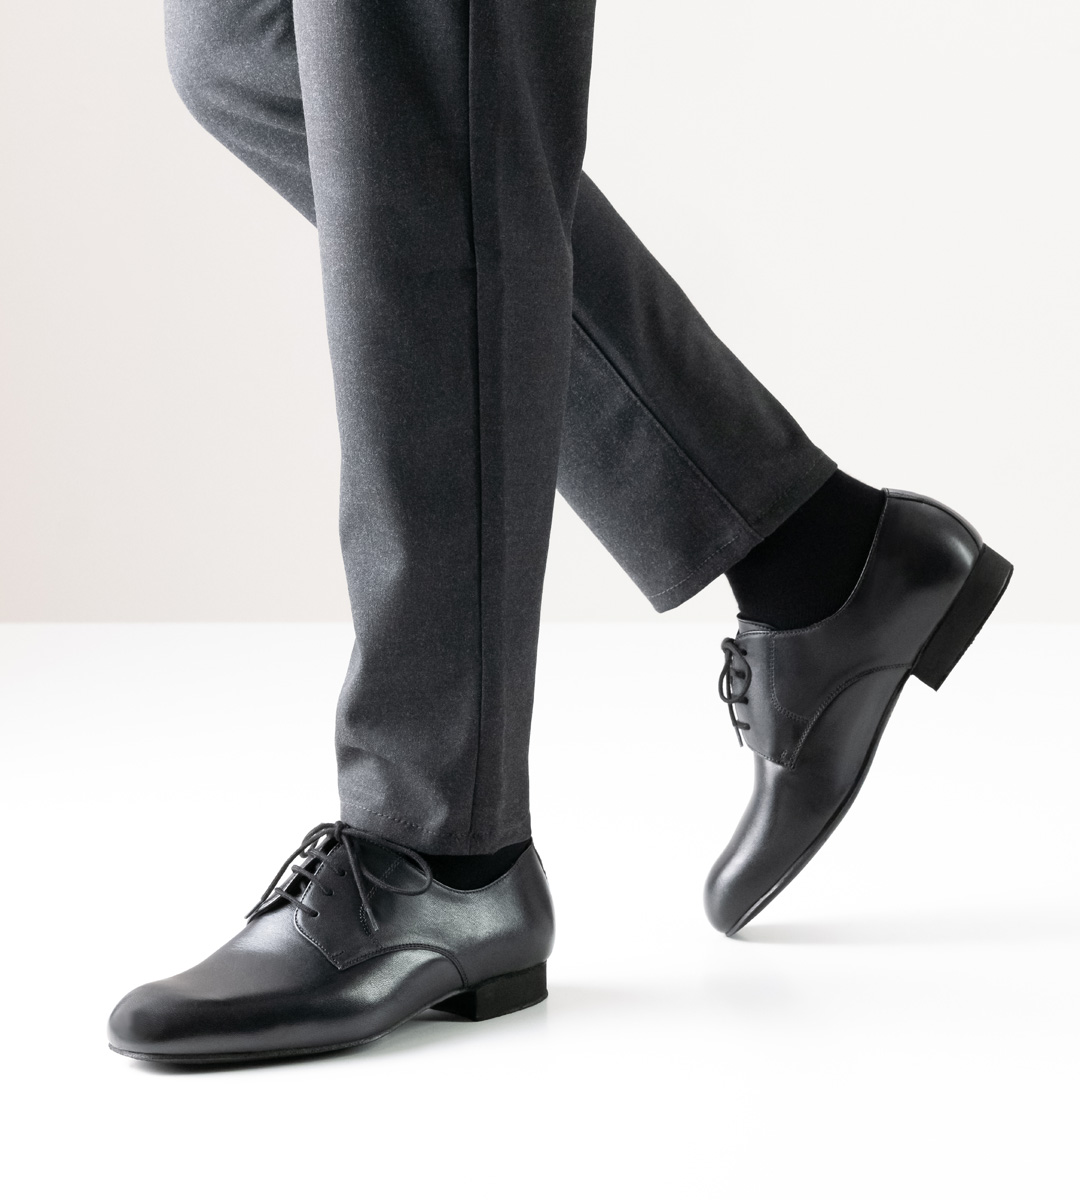 Chaussures de danse pour hommes pour pieds larges de Werner Kern avec doublure en cuir